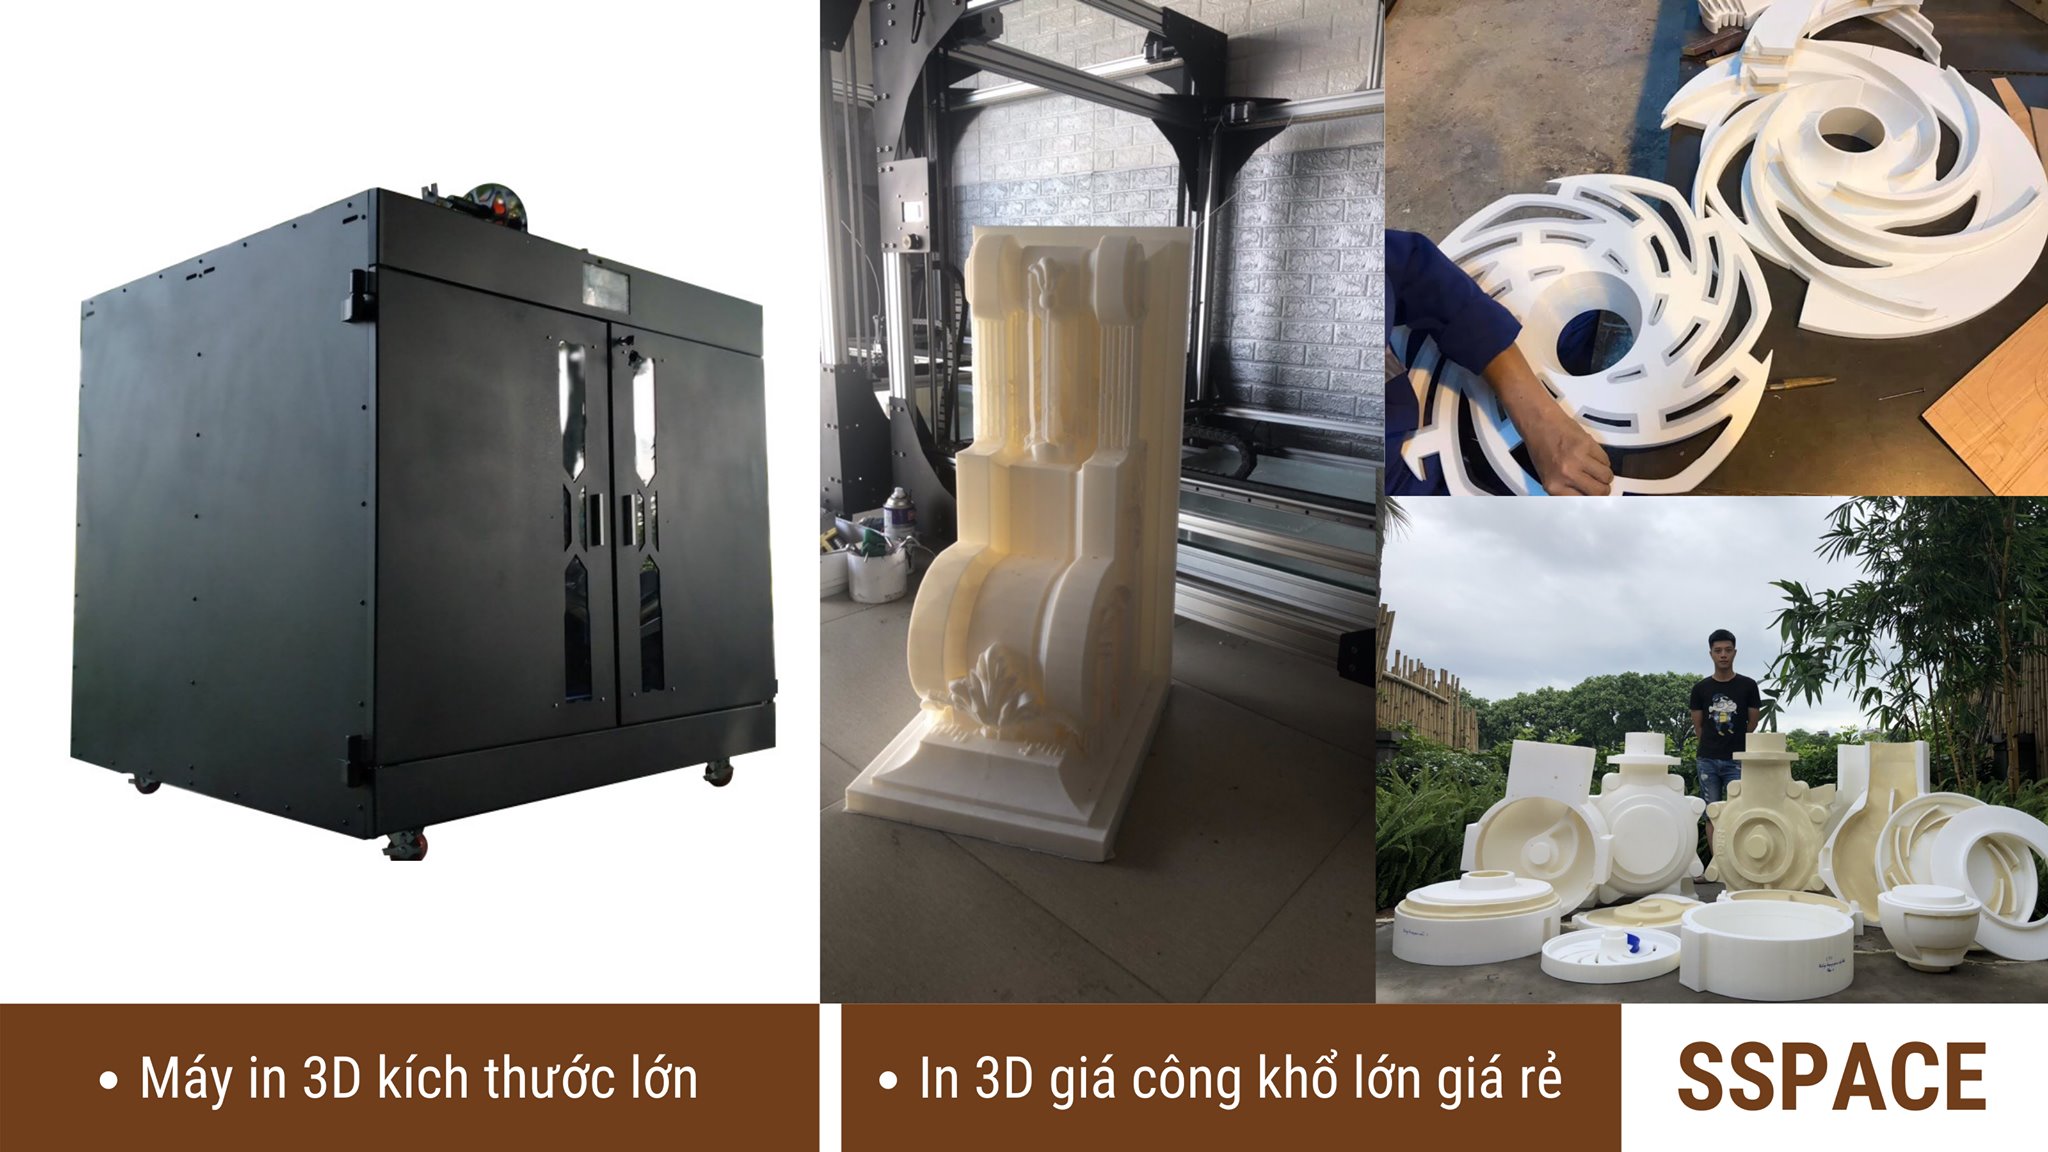 In 3D khổ lớn | Máy in 3D khổ lớn và dịch vụ in 3D gia công khổ lớn TPHCM | Máy in 3D Kích thước lớn đáp ứng nhu cầu cao về tạo mẫu sản xuất, tạo mẫu mô hình, tạo mẫu đúc khuôn cát, tạo mẫu đúc bằng khuôn silicon.